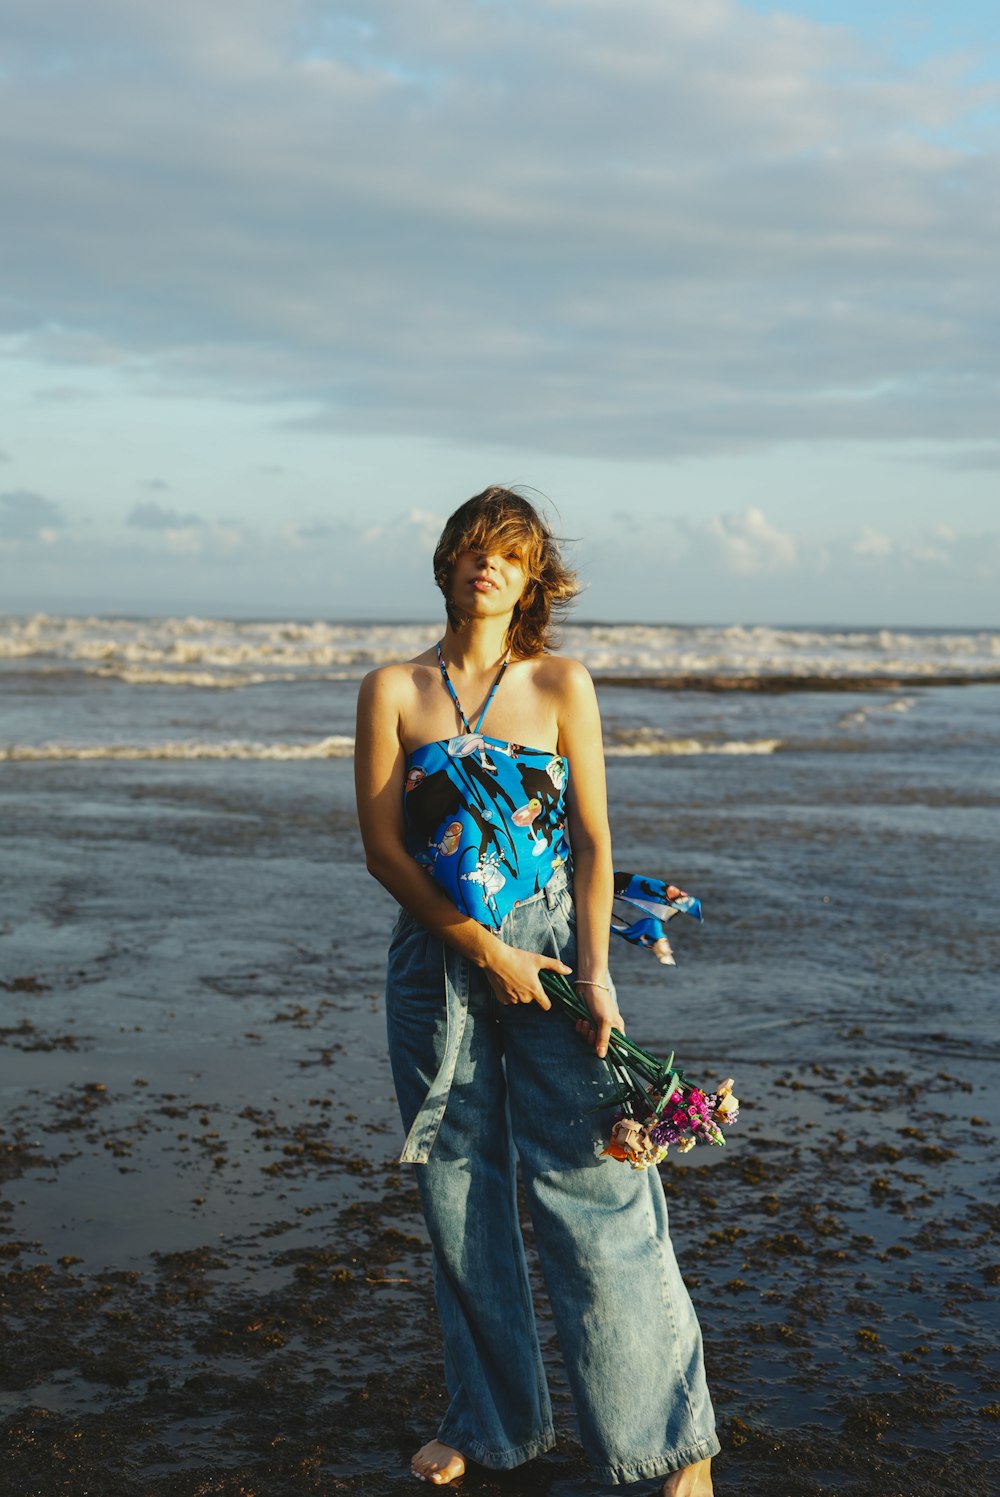 Una persona con un vestido azul en una playa